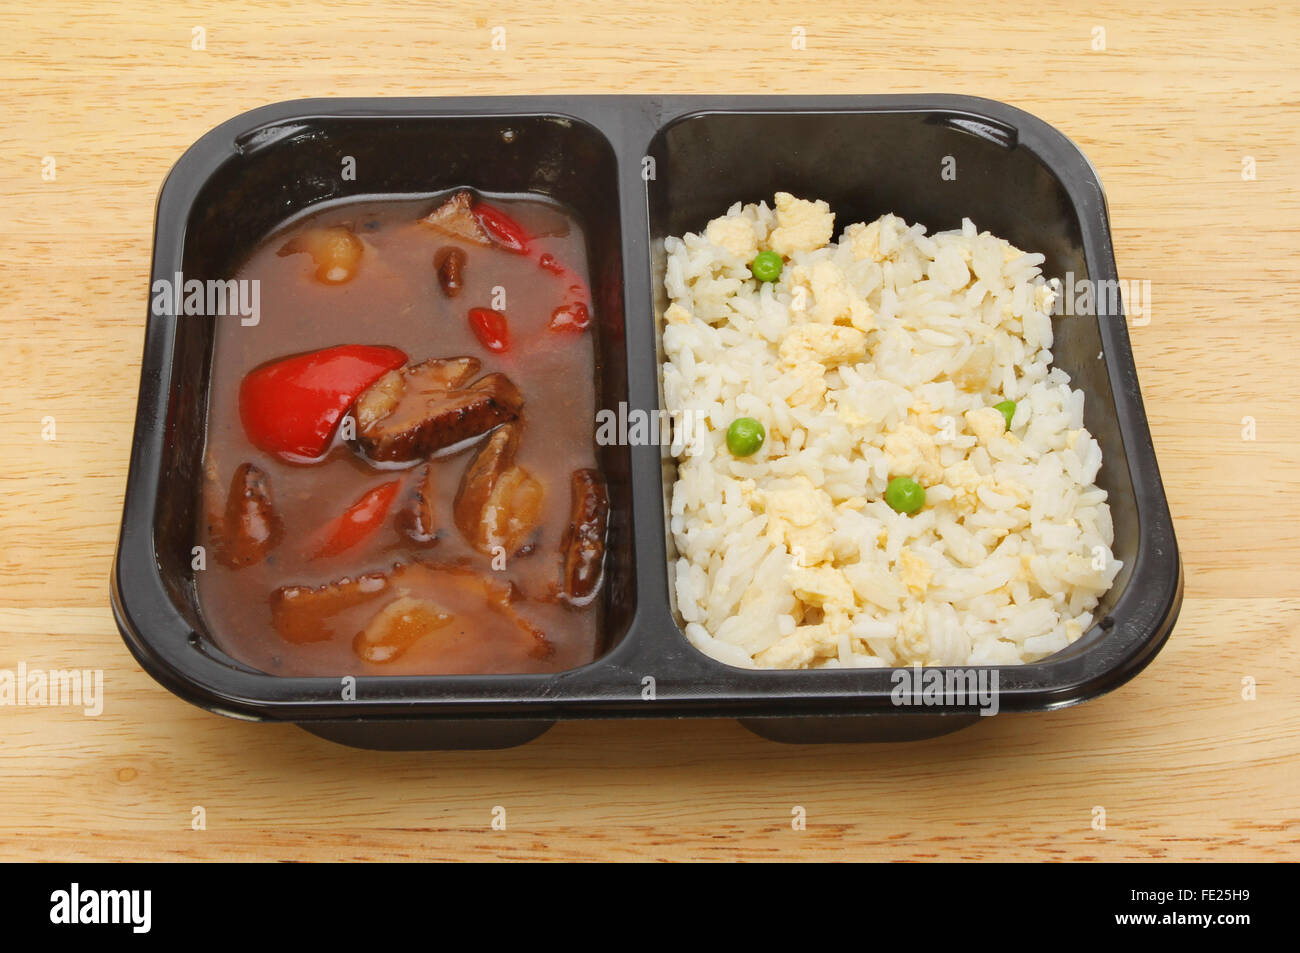 Gebratener Reis in einem Kunststoff Karton auf einem Holzbrett mit  orientalischen Mikrowelle Essen, Ente in Pflaumensauce mit Ei  Stockfotografie - Alamy